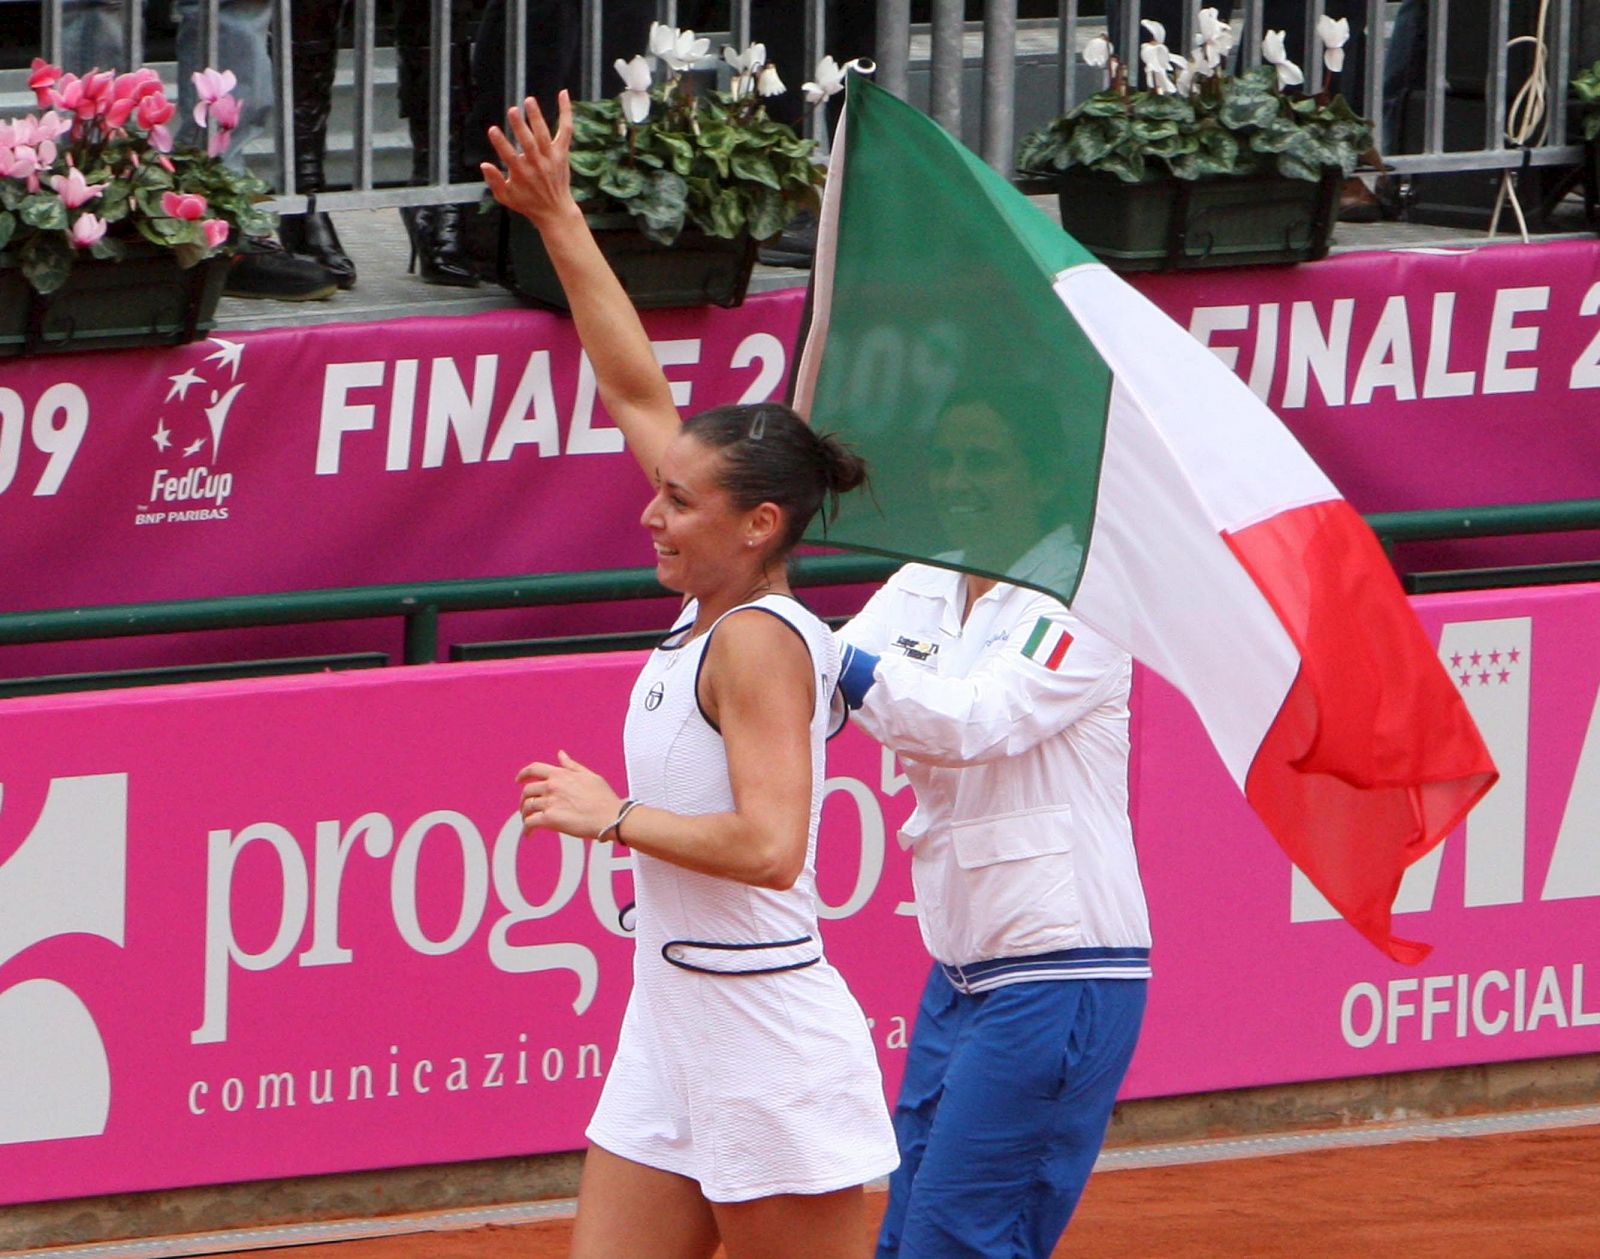 Flavia Pennetta consiguió el punto definitivo para el equipo italiano.